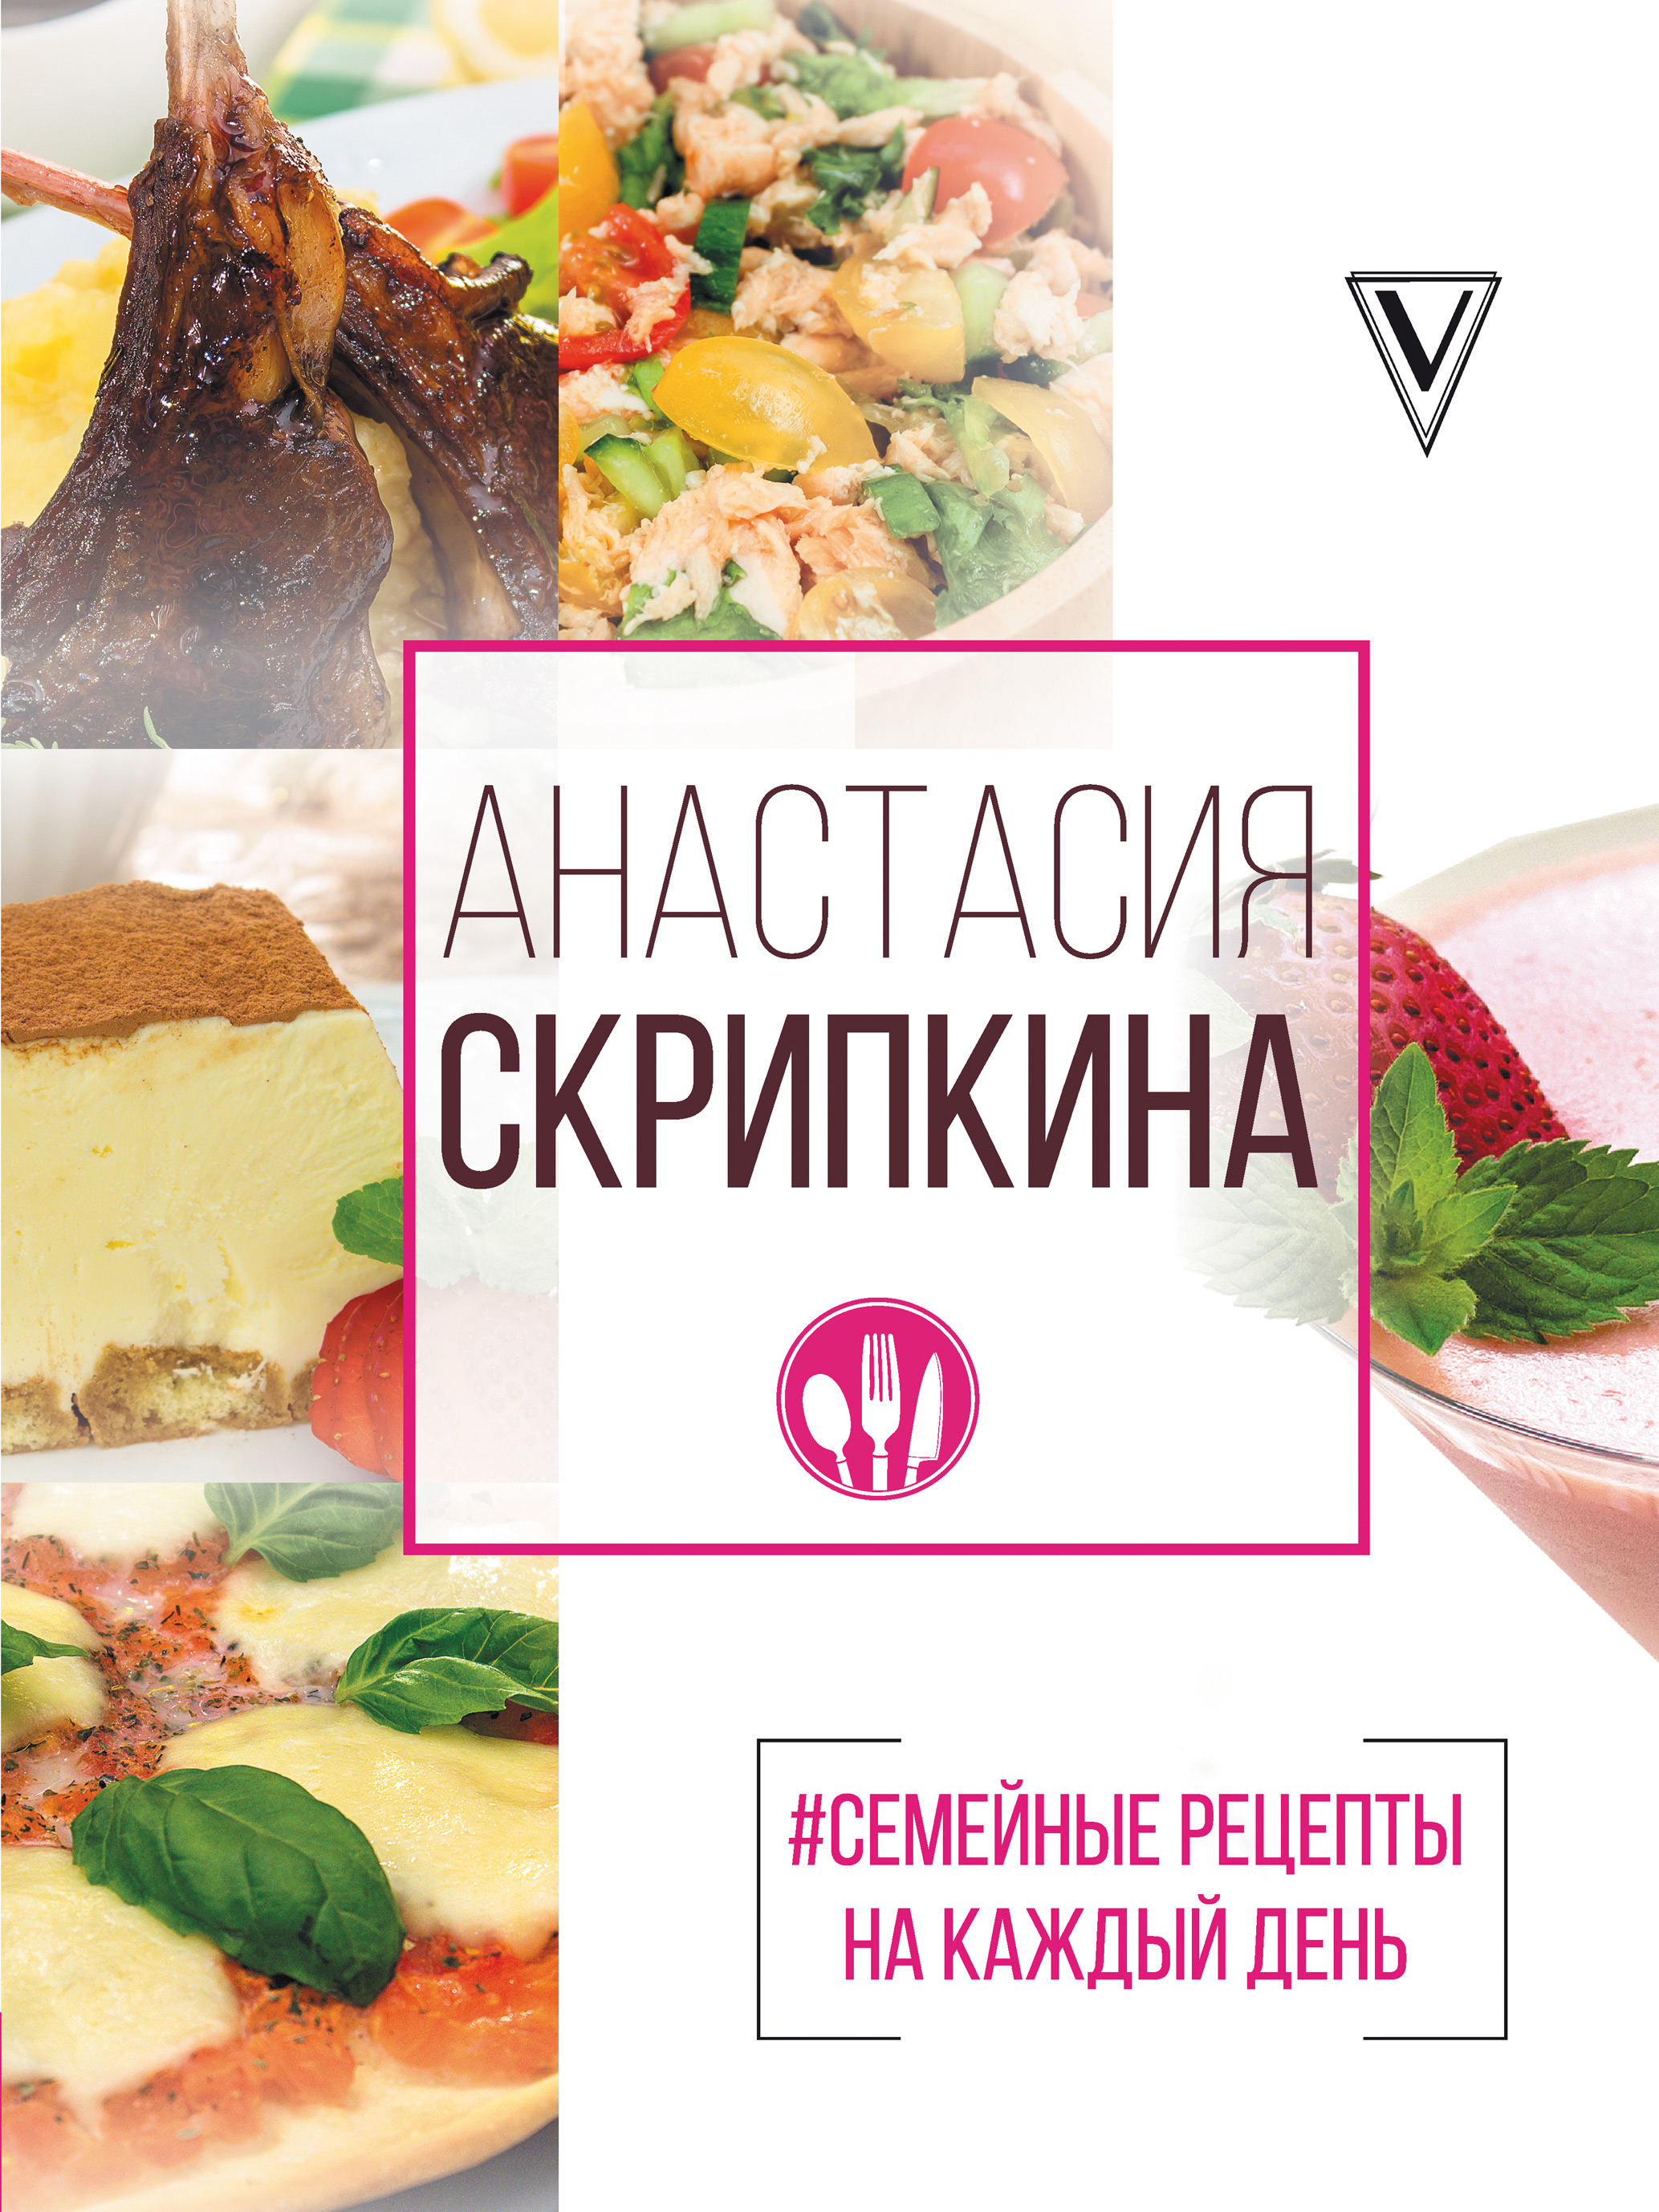 Сегодня мы узнаем как приготовить вкусный рецепт от Анастасии Скрипкиной